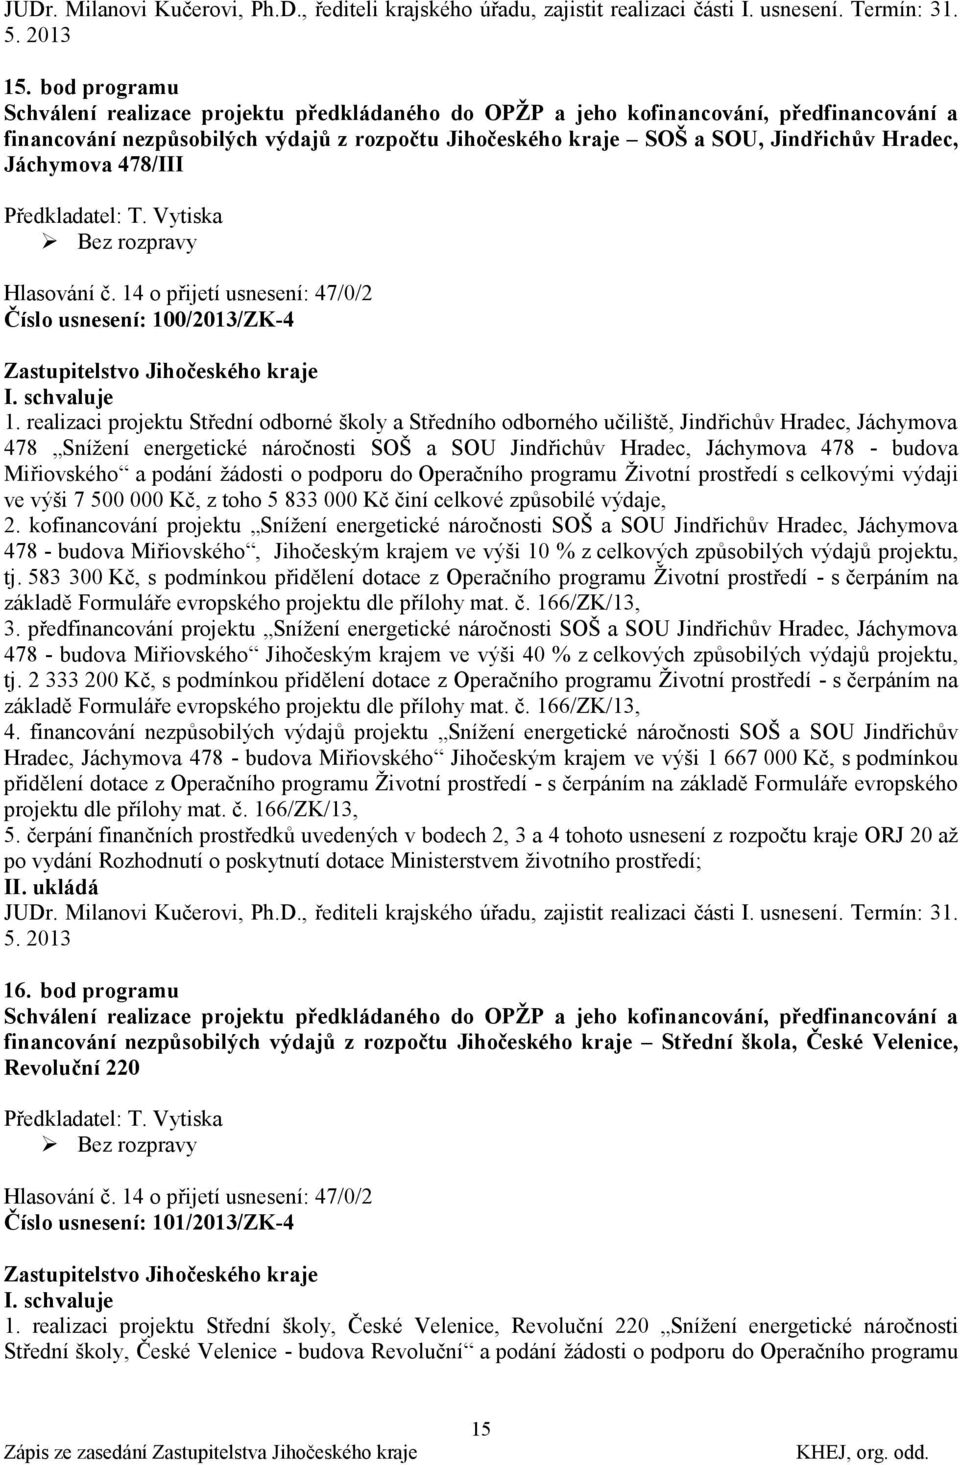 Jáchymova 478/III Předkladatel: T. Vytiska Hlasování č. 14 o přijetí usnesení: 47/0/2 Číslo usnesení: 100/2013/ZK-4 I. schvaluje 1.